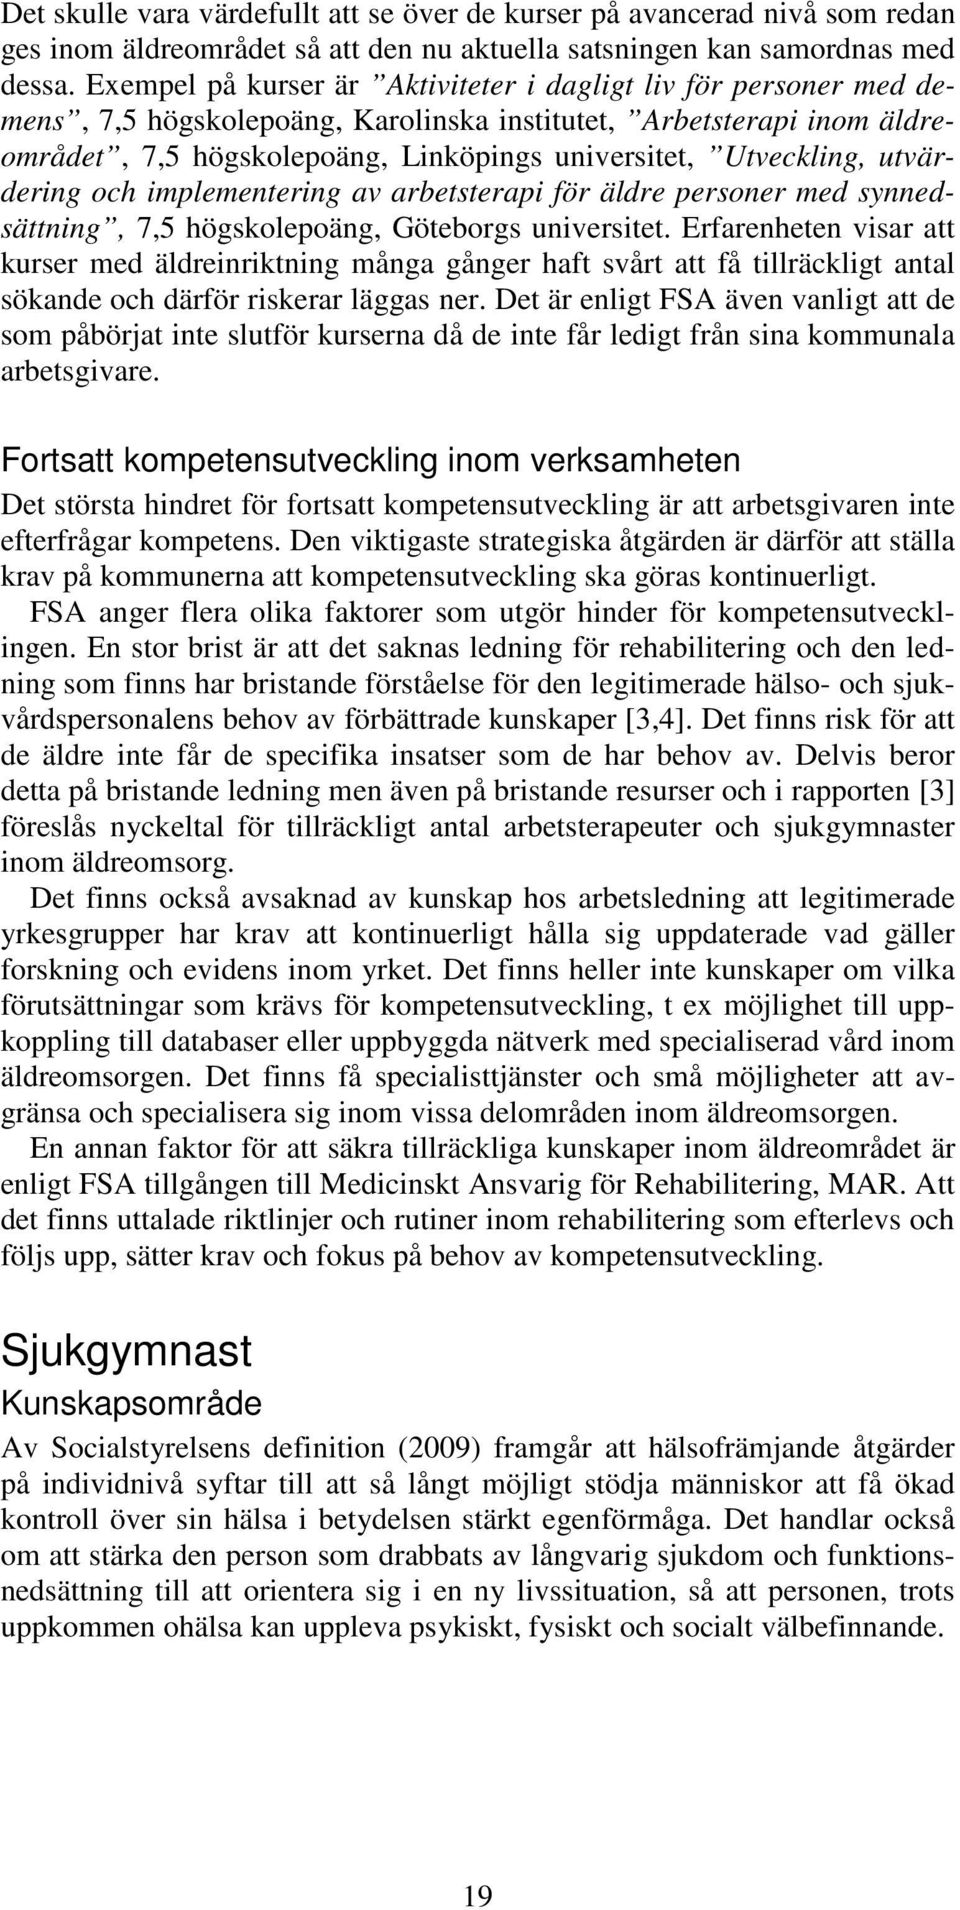 Utveckling, utvärdering och implementering av arbetsterapi för äldre personer med synnedsättning, 7,5 högskolepoäng, Göteborgs universitet.